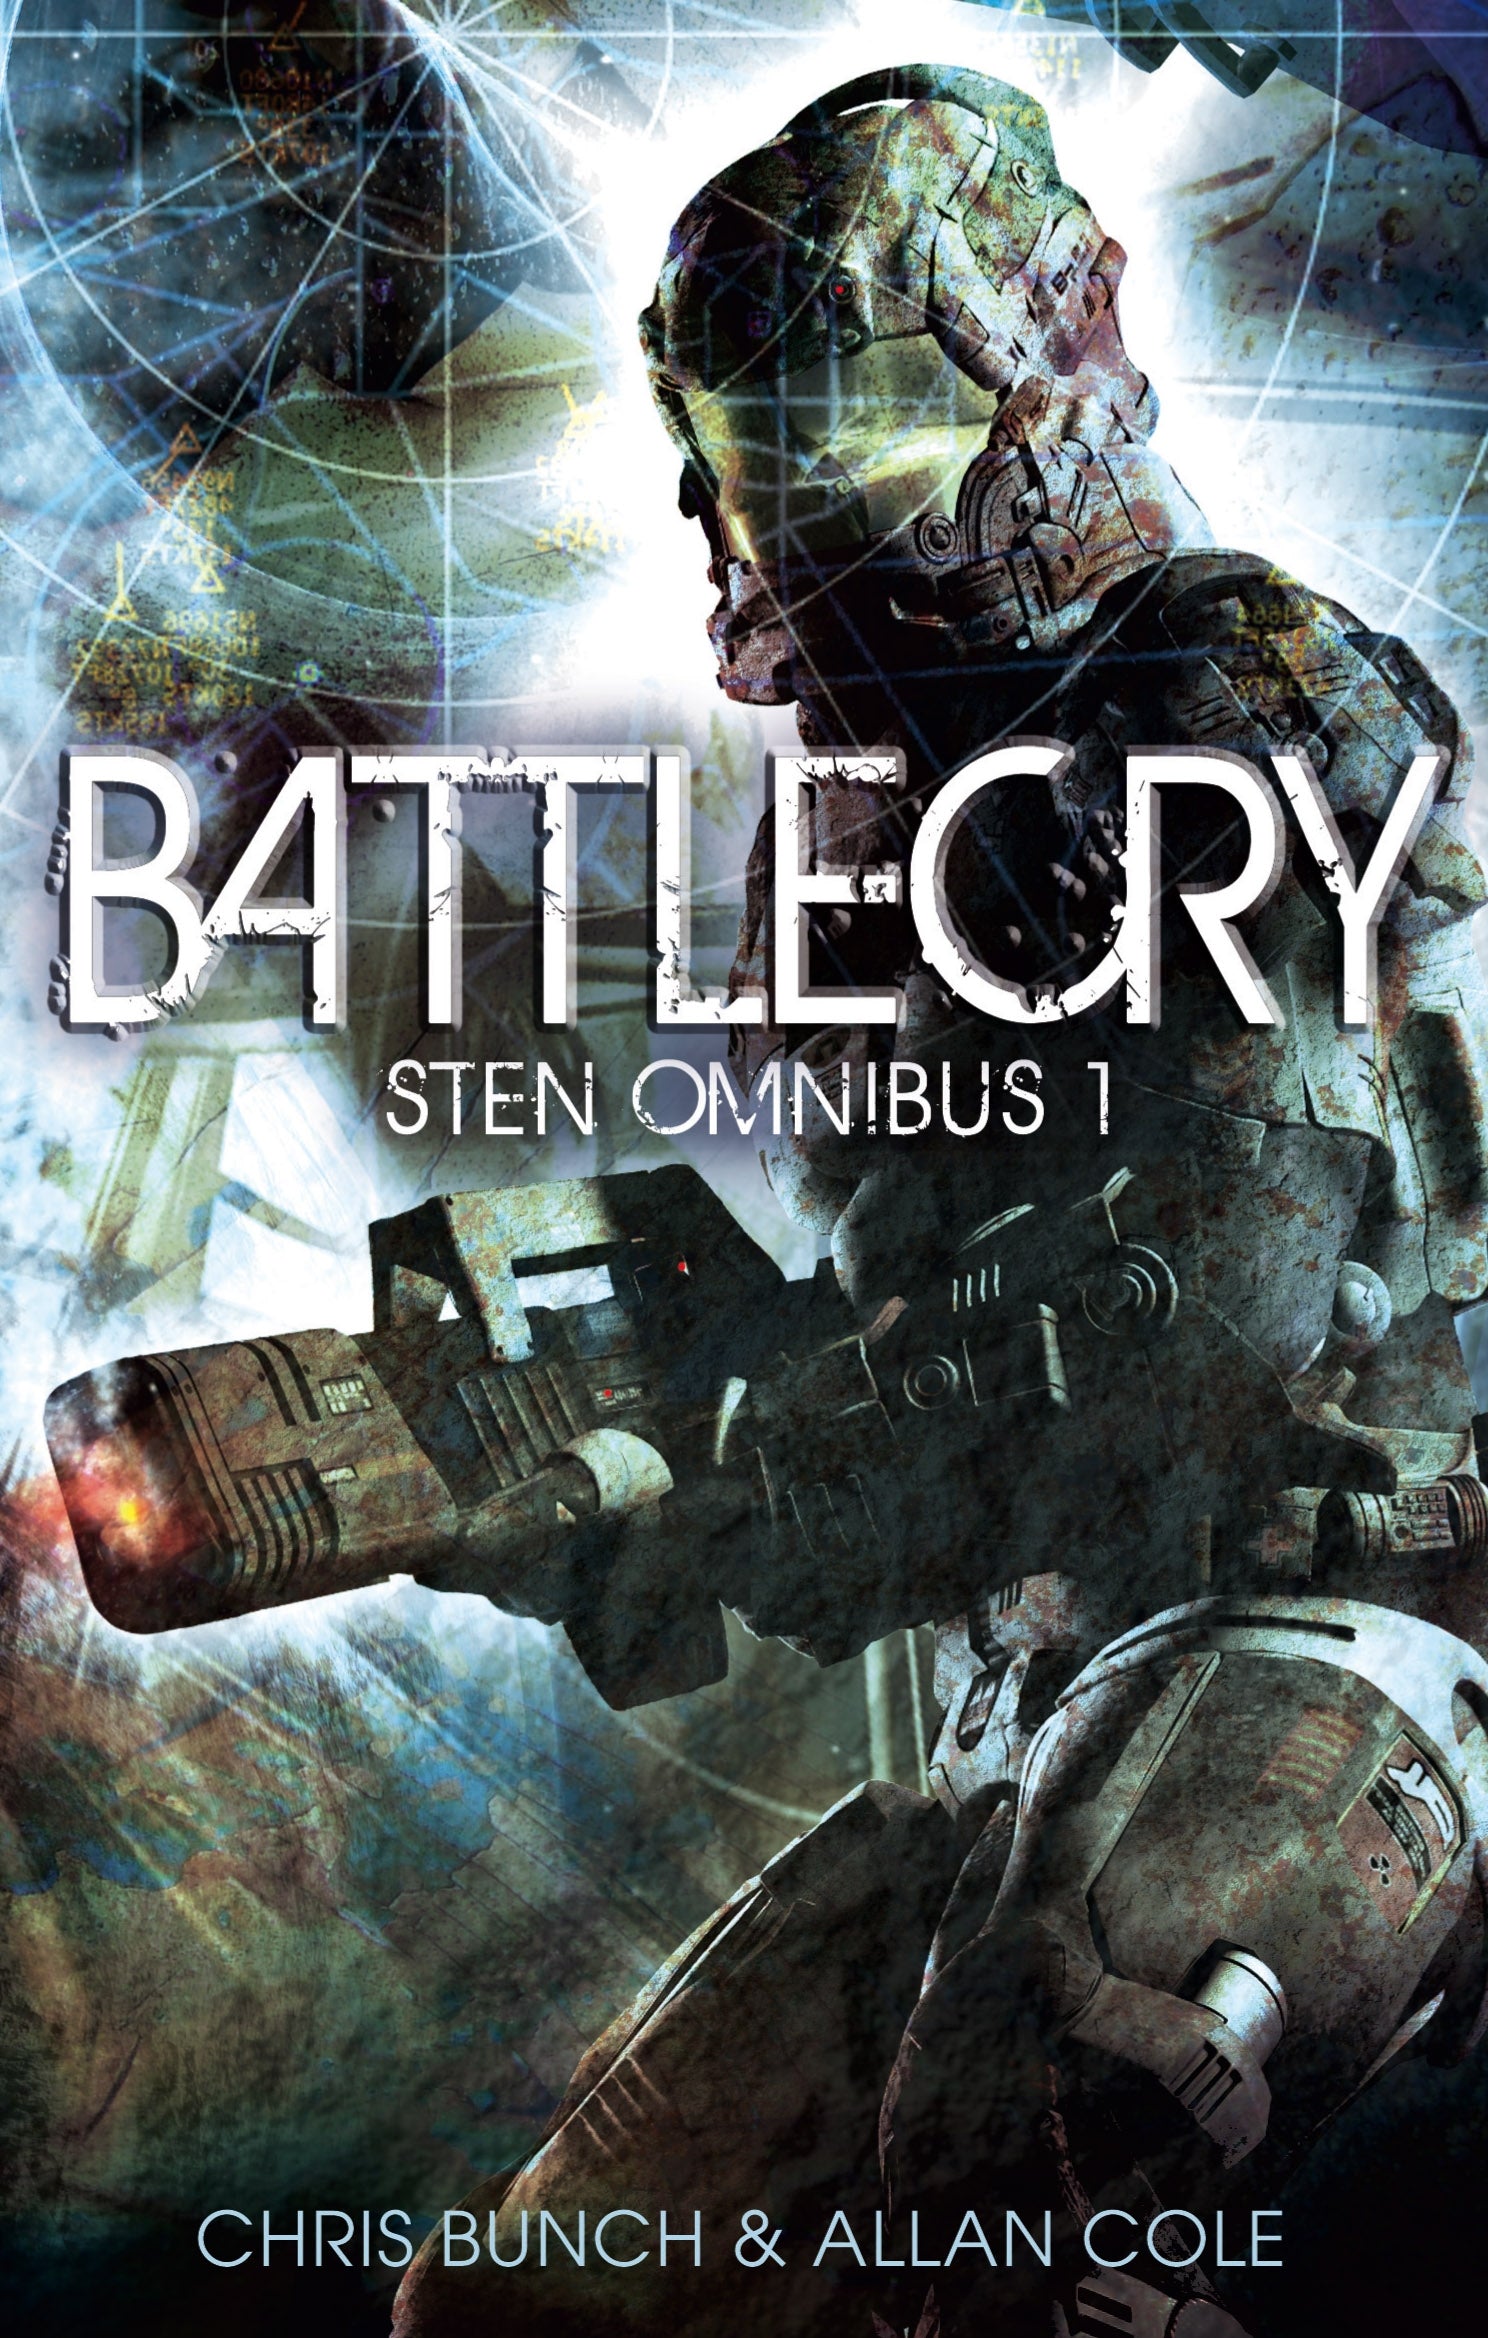 Battlecry: Sten Omnibus 1 by Chris Bunch, Allan Cole